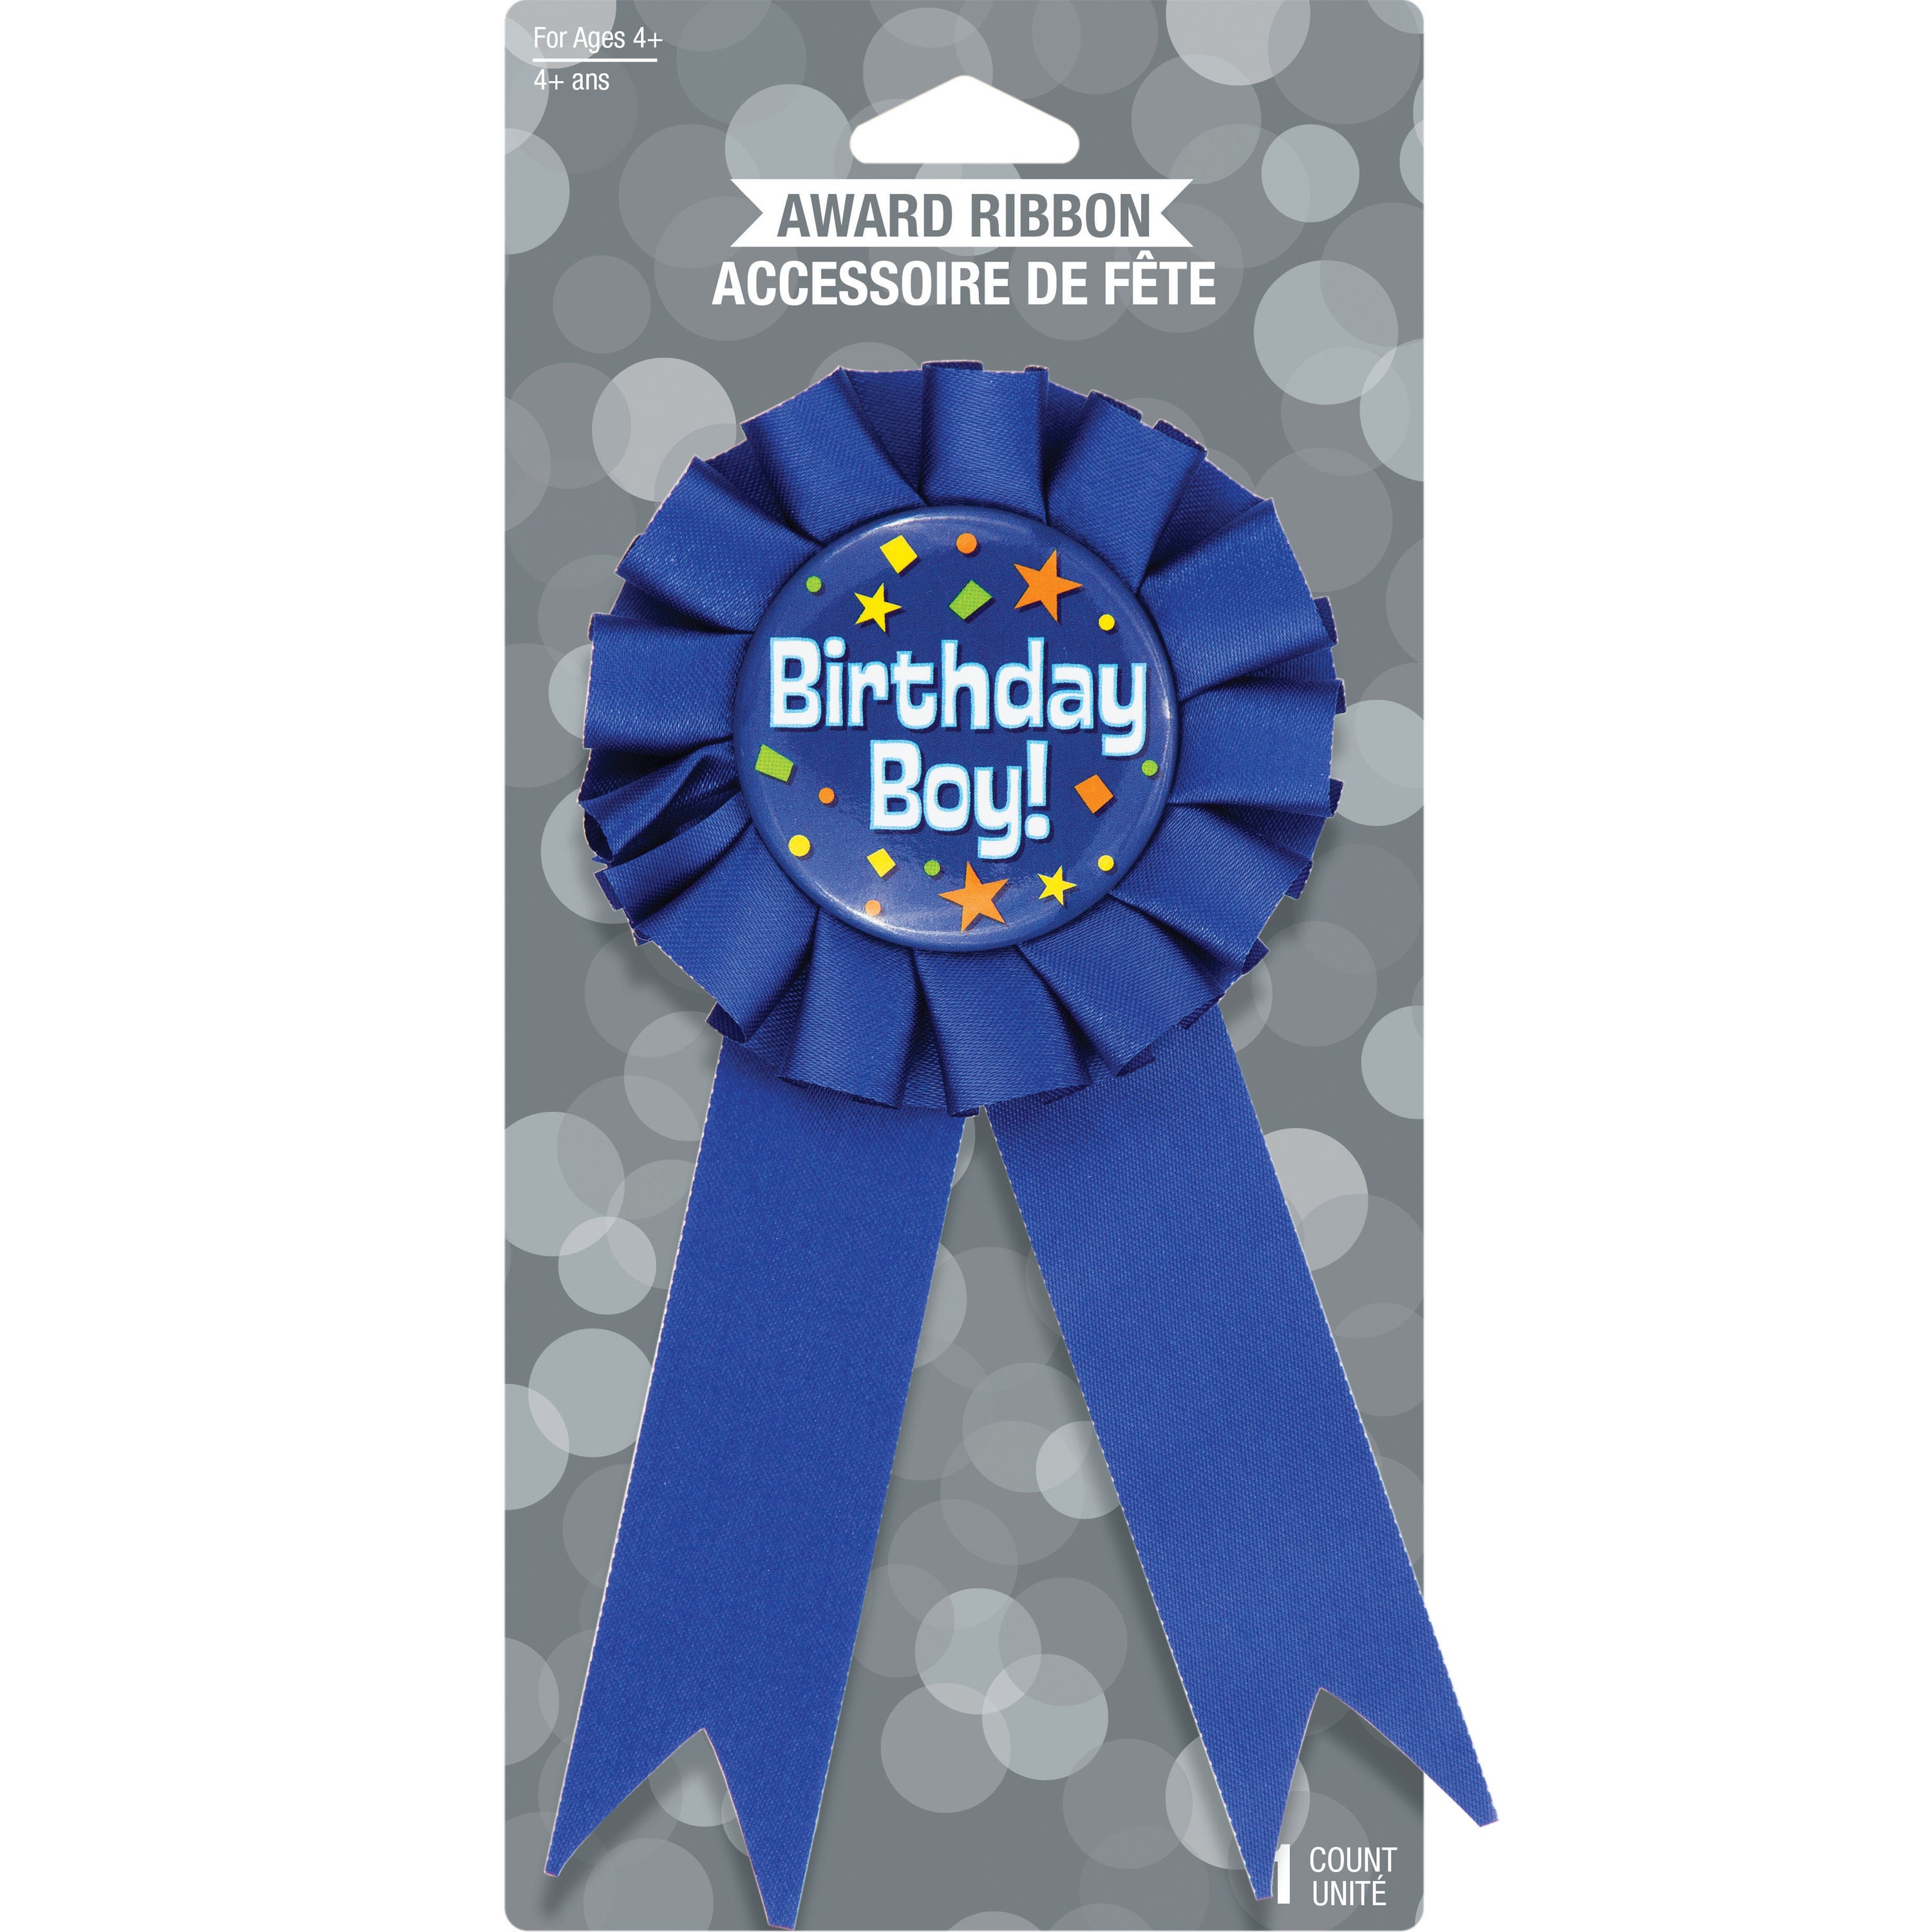 Birthday Ribbon Badges at Lakeshore Learning